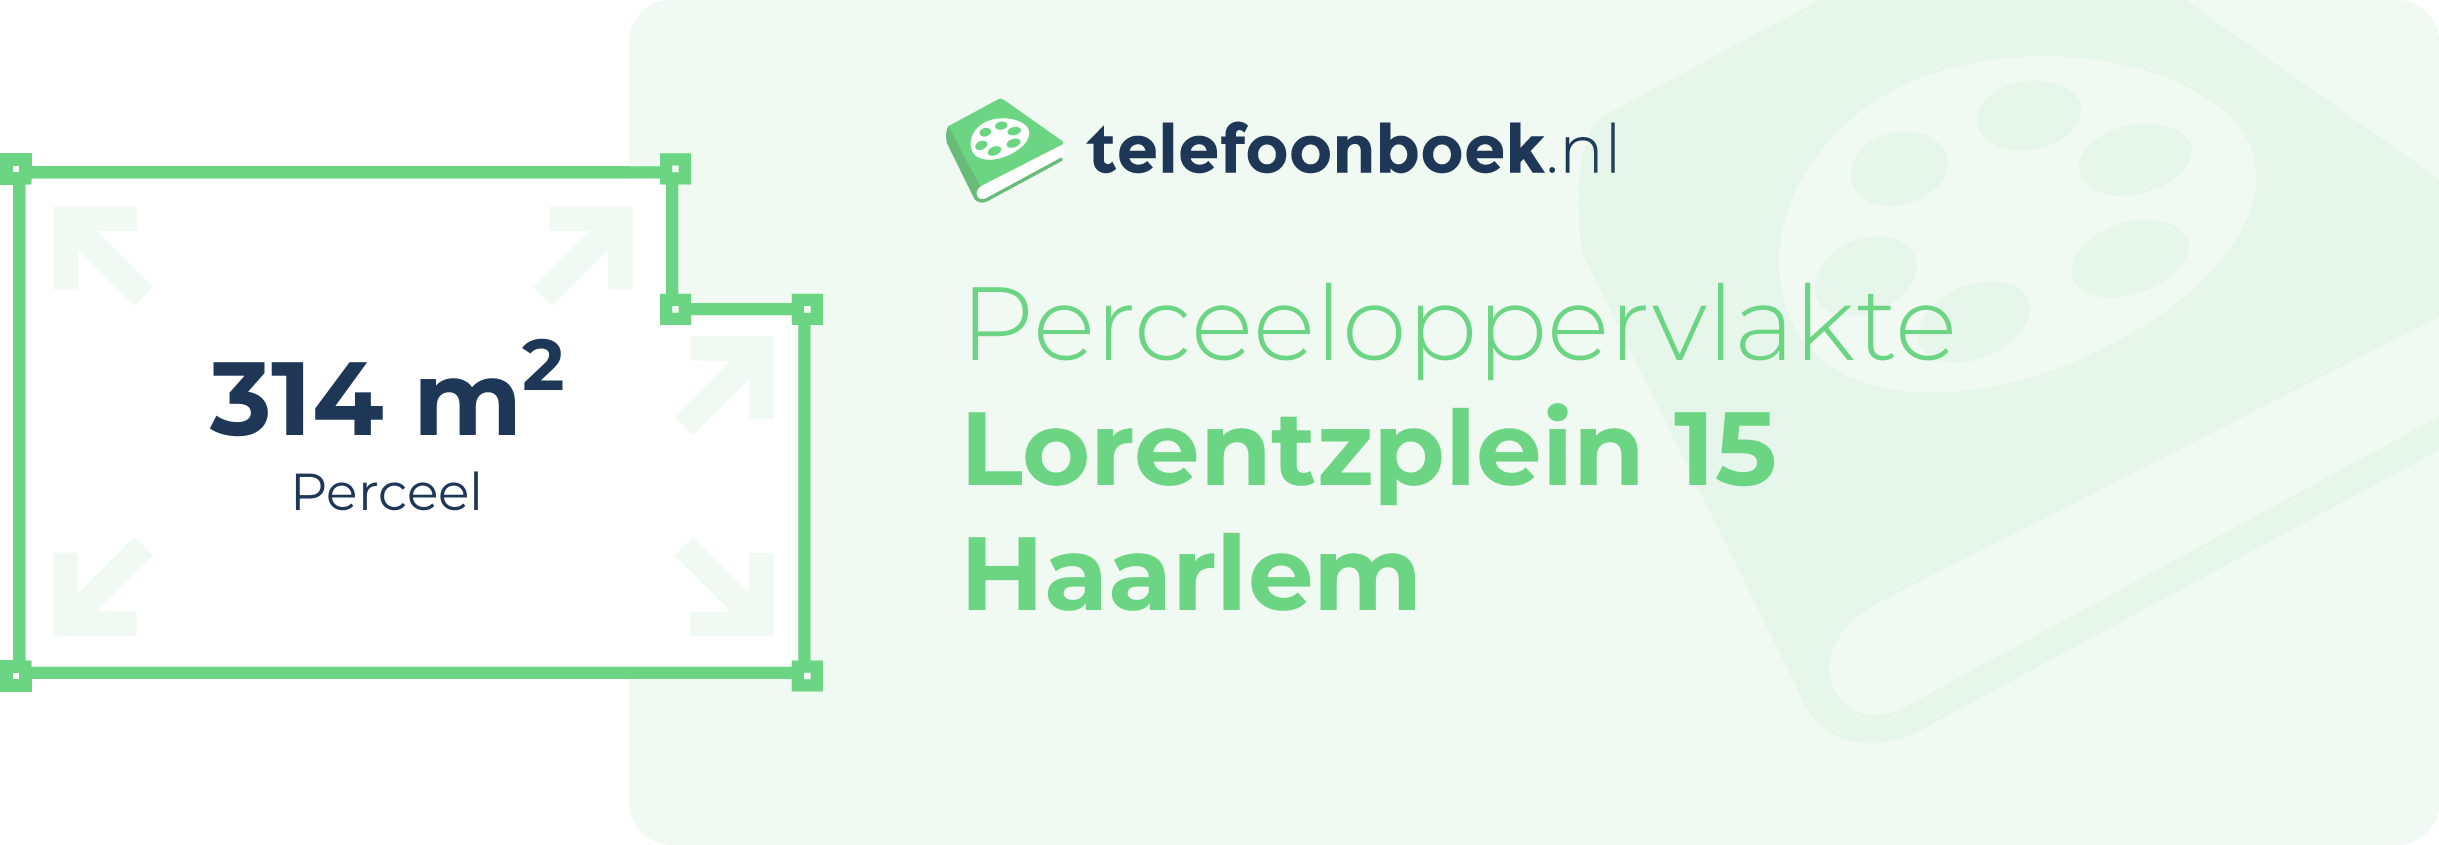 Perceeloppervlakte Lorentzplein 15 Haarlem